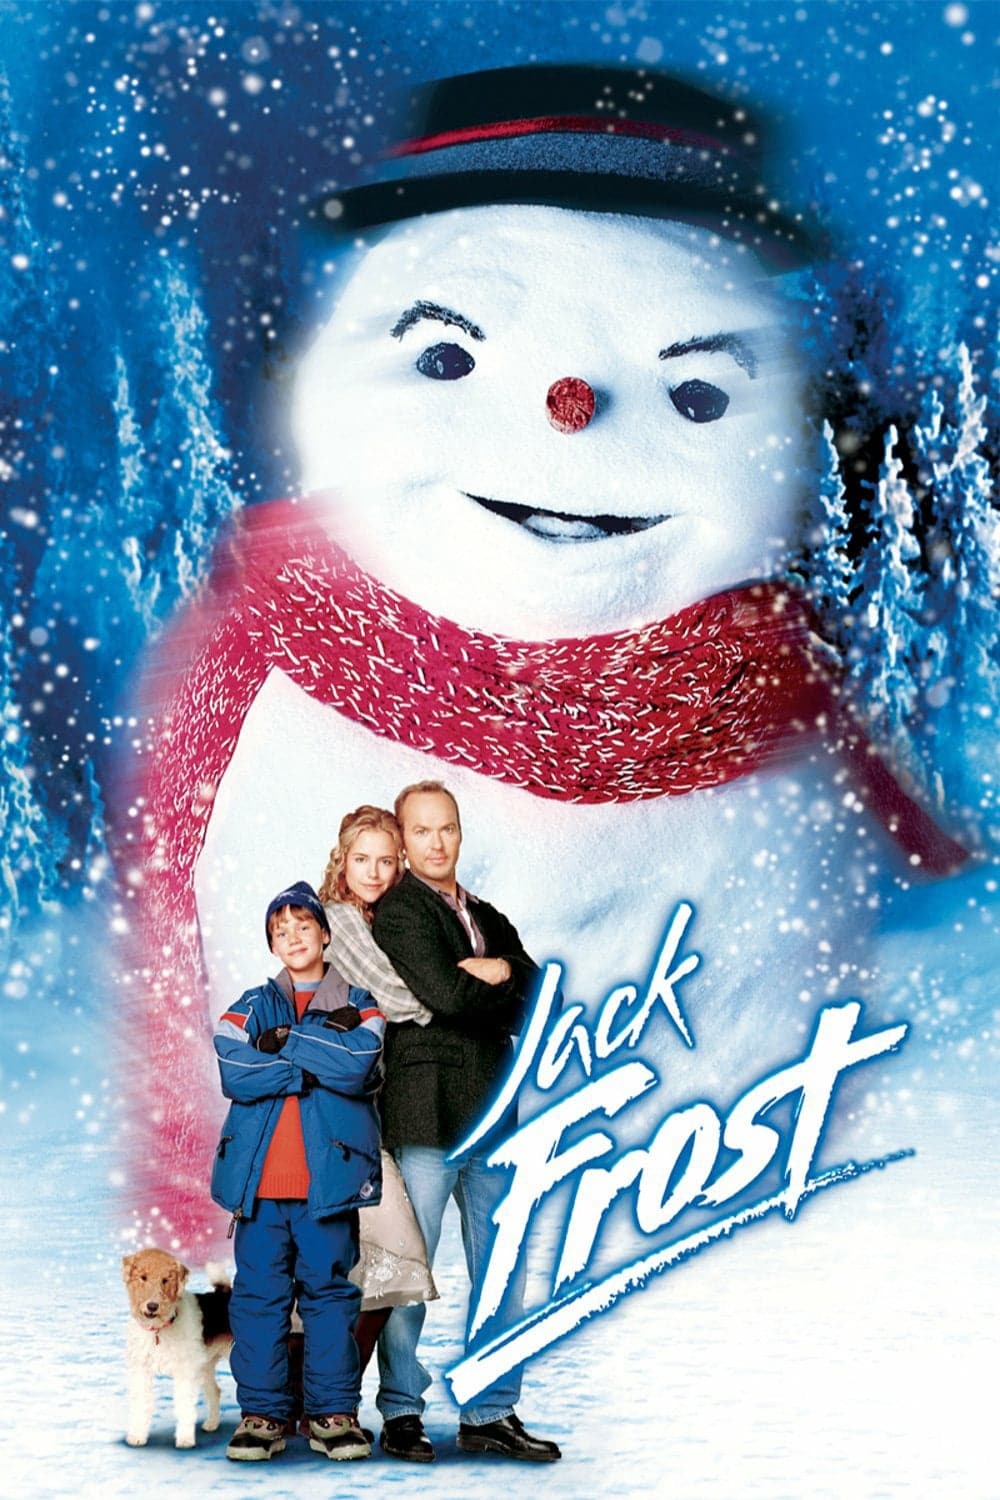 Plakat von "Jack Frost - Der coolste Dad der Welt!"